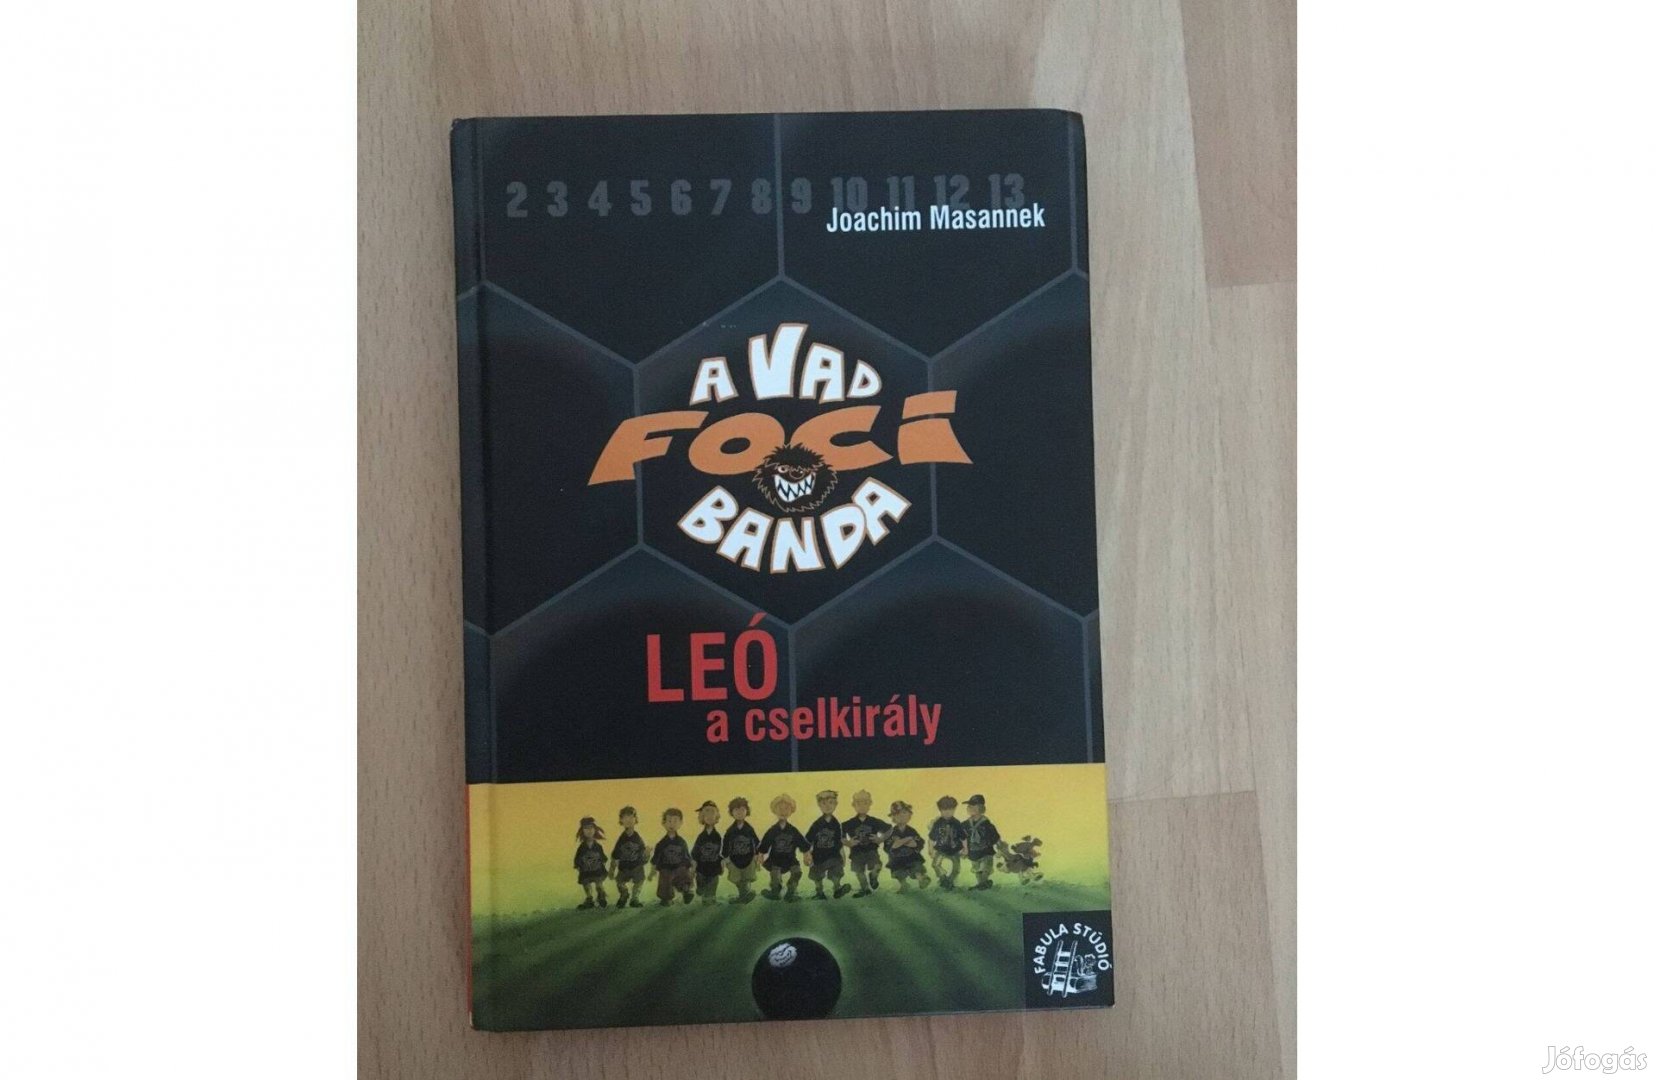 Joachim Masannek: Leó, a cselkirály c. könyv /A vad focibanda sorozat